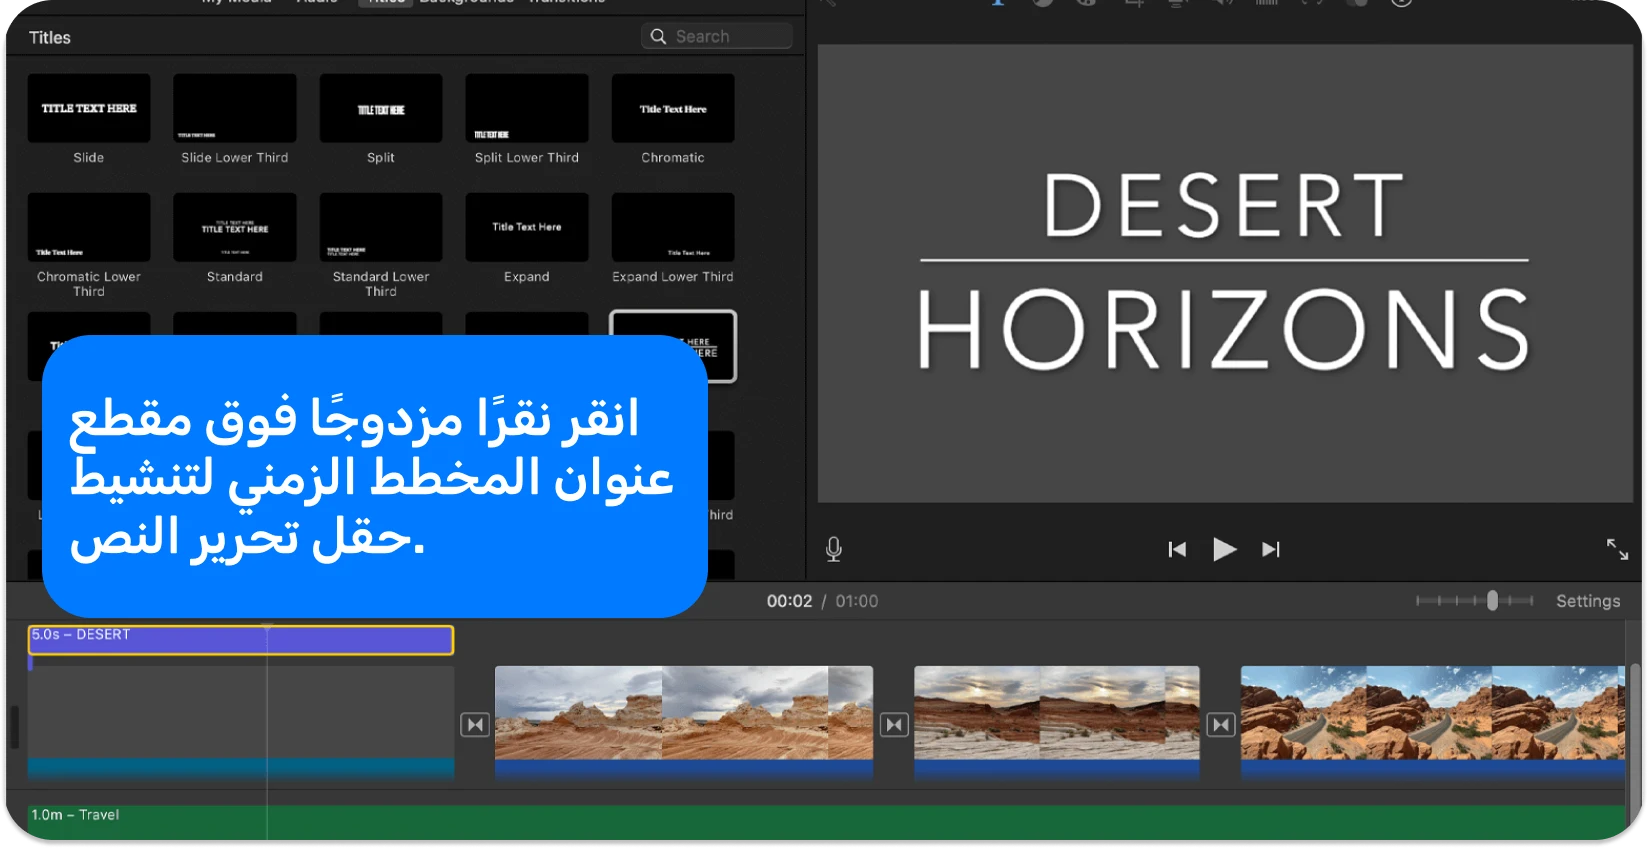 تعرض واجهة iMovie Titles مجموعة متنوعة من أنماط وتنسيقات النص لإضافة عناوين احترافية إلى مشاريع الفيديو.
